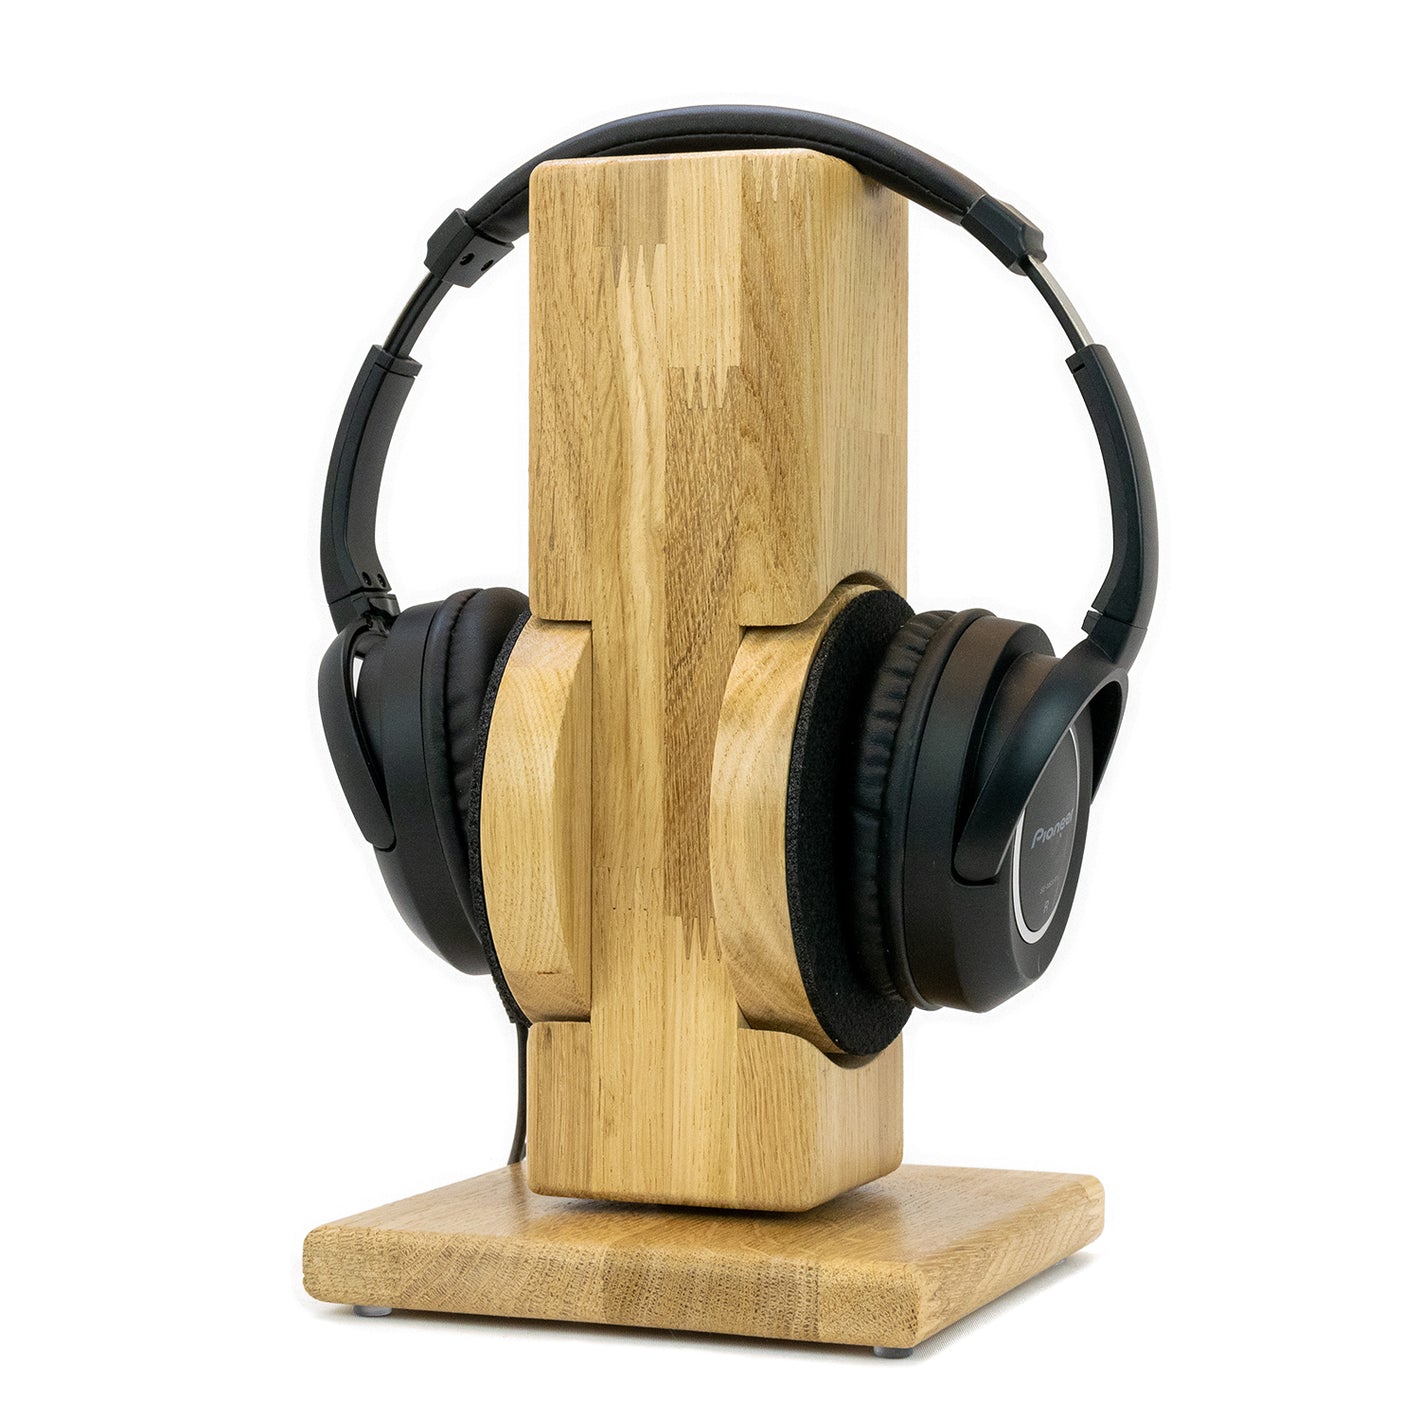 Kopfhörerständer RONDOO aus Massivholz Eiche mit auswechselbarem Ohrpolsterschutz.